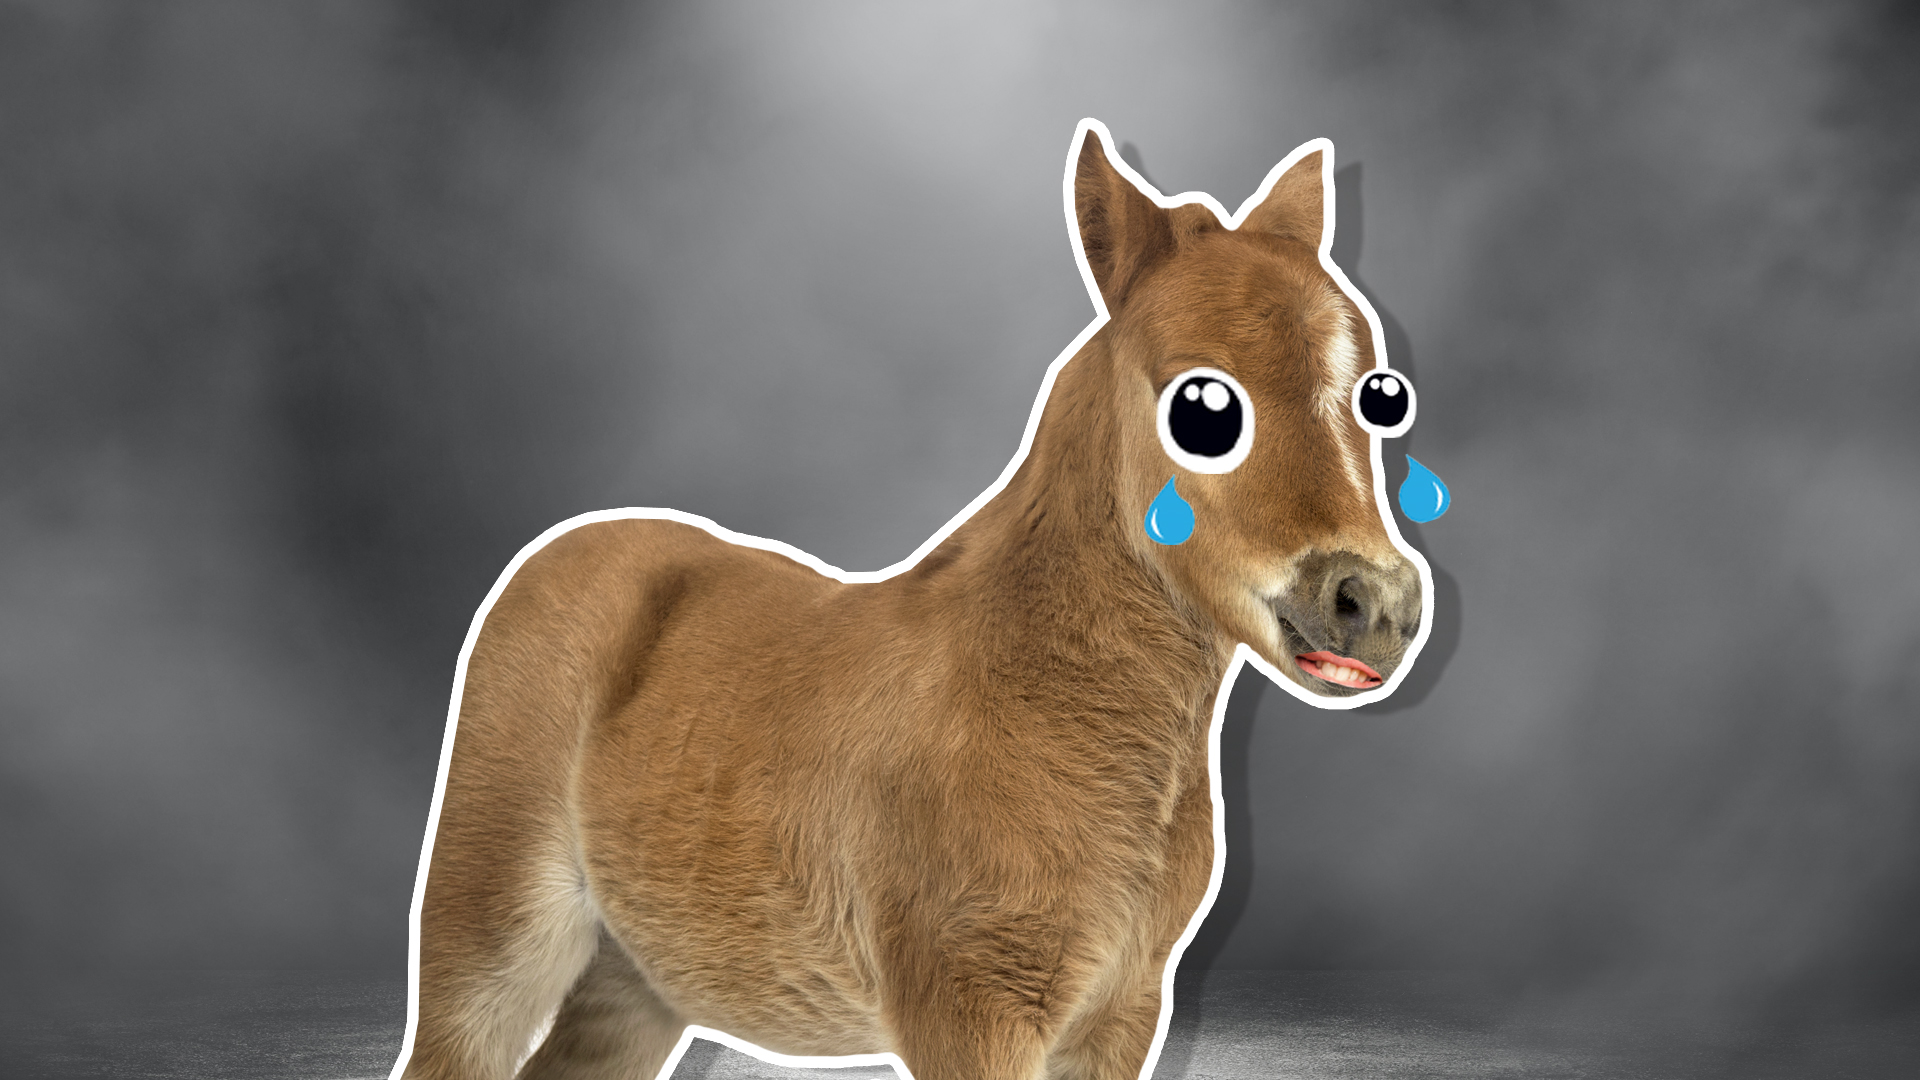 A sad pony